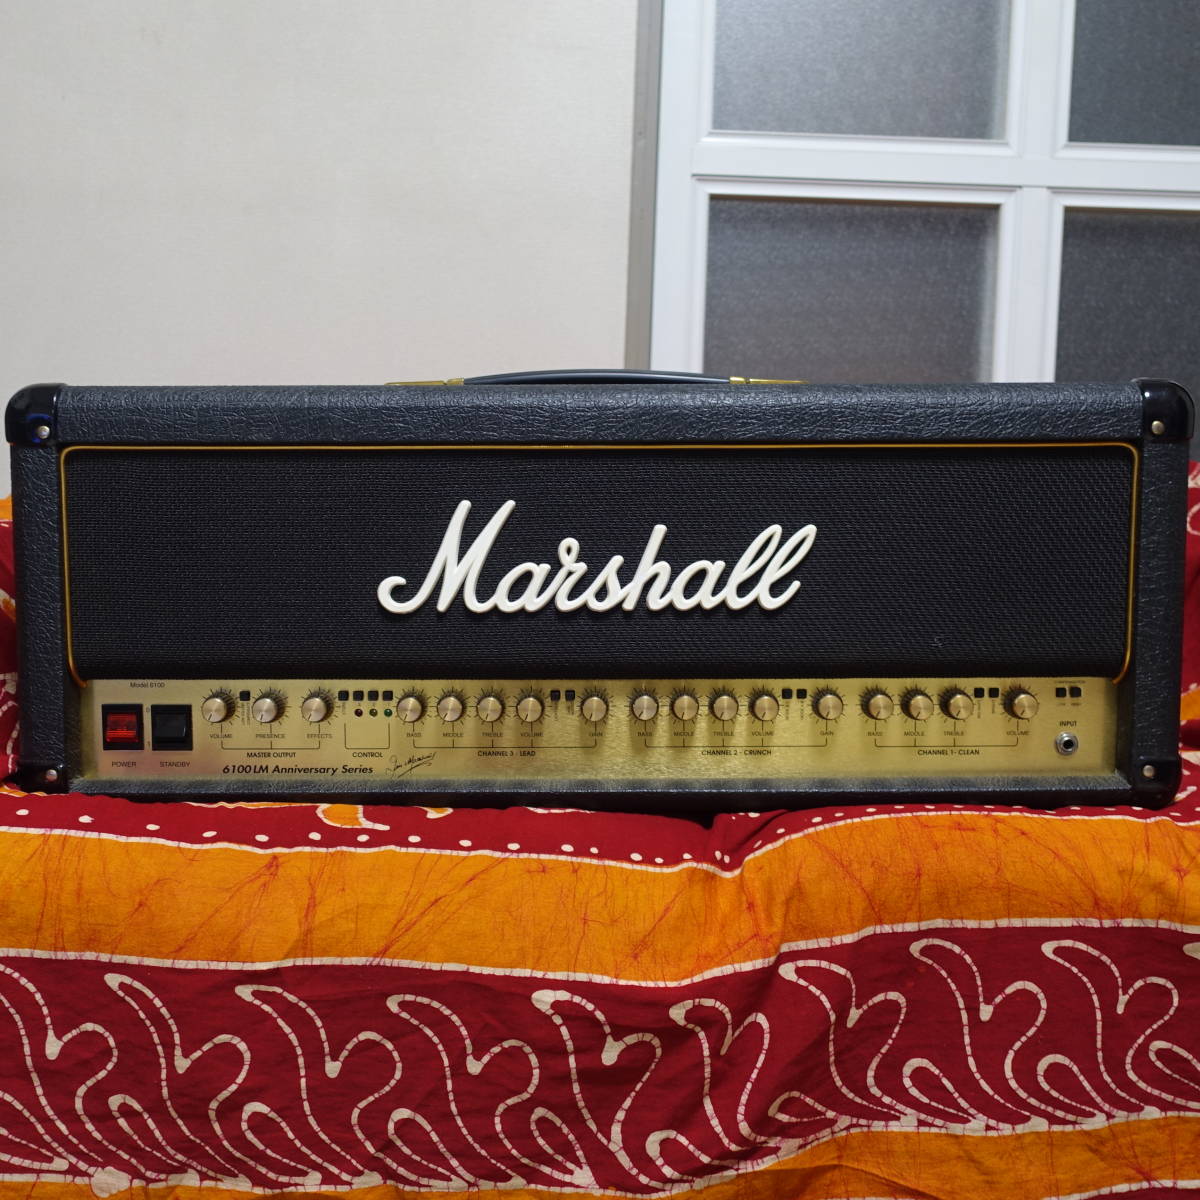 ヘッド 6100lm 真空管 ロック ギターアンプ マーシャル フルチューブ メタル Midi 100w 3ch Marshall 状態良 De Marsaalamtours Com